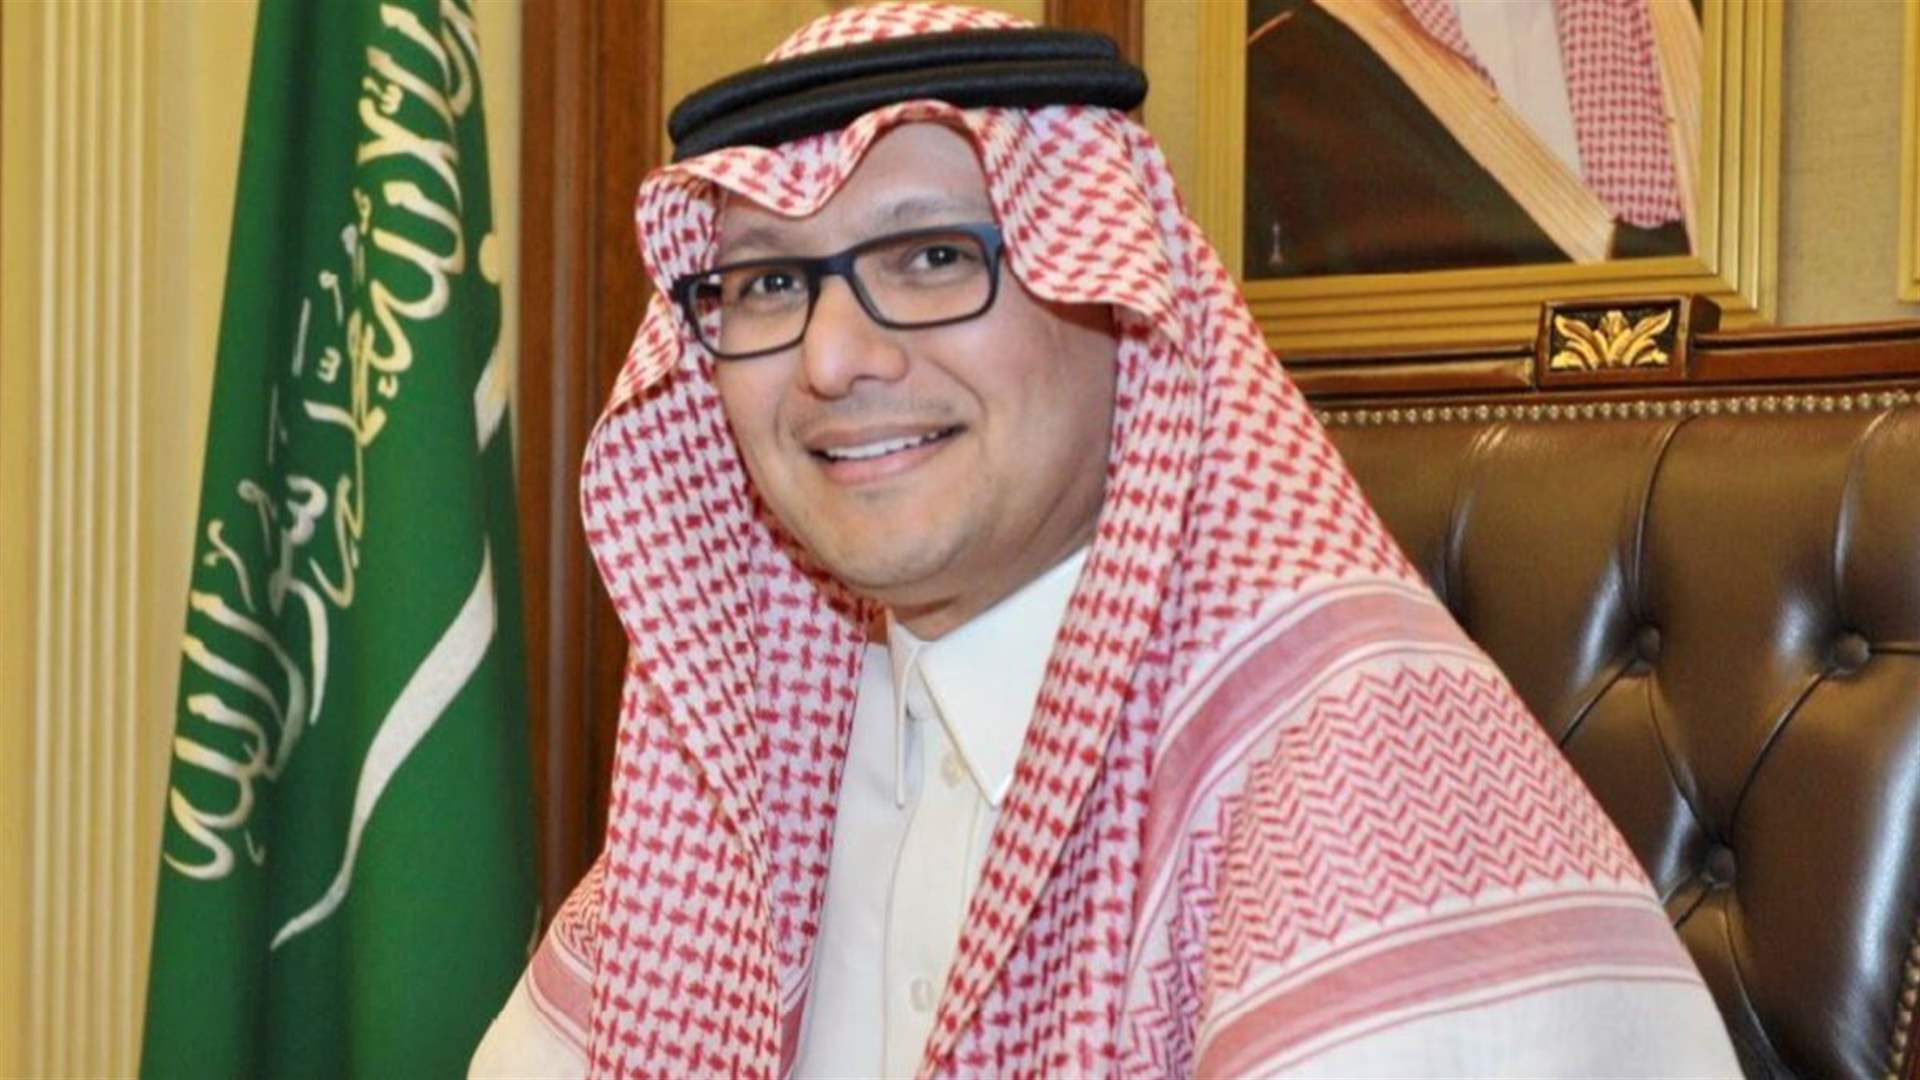 السفير السعودي: انتخاب الرئيس يأتي من داخل لبنان وليس من خارجه (الشرق الأوسط)